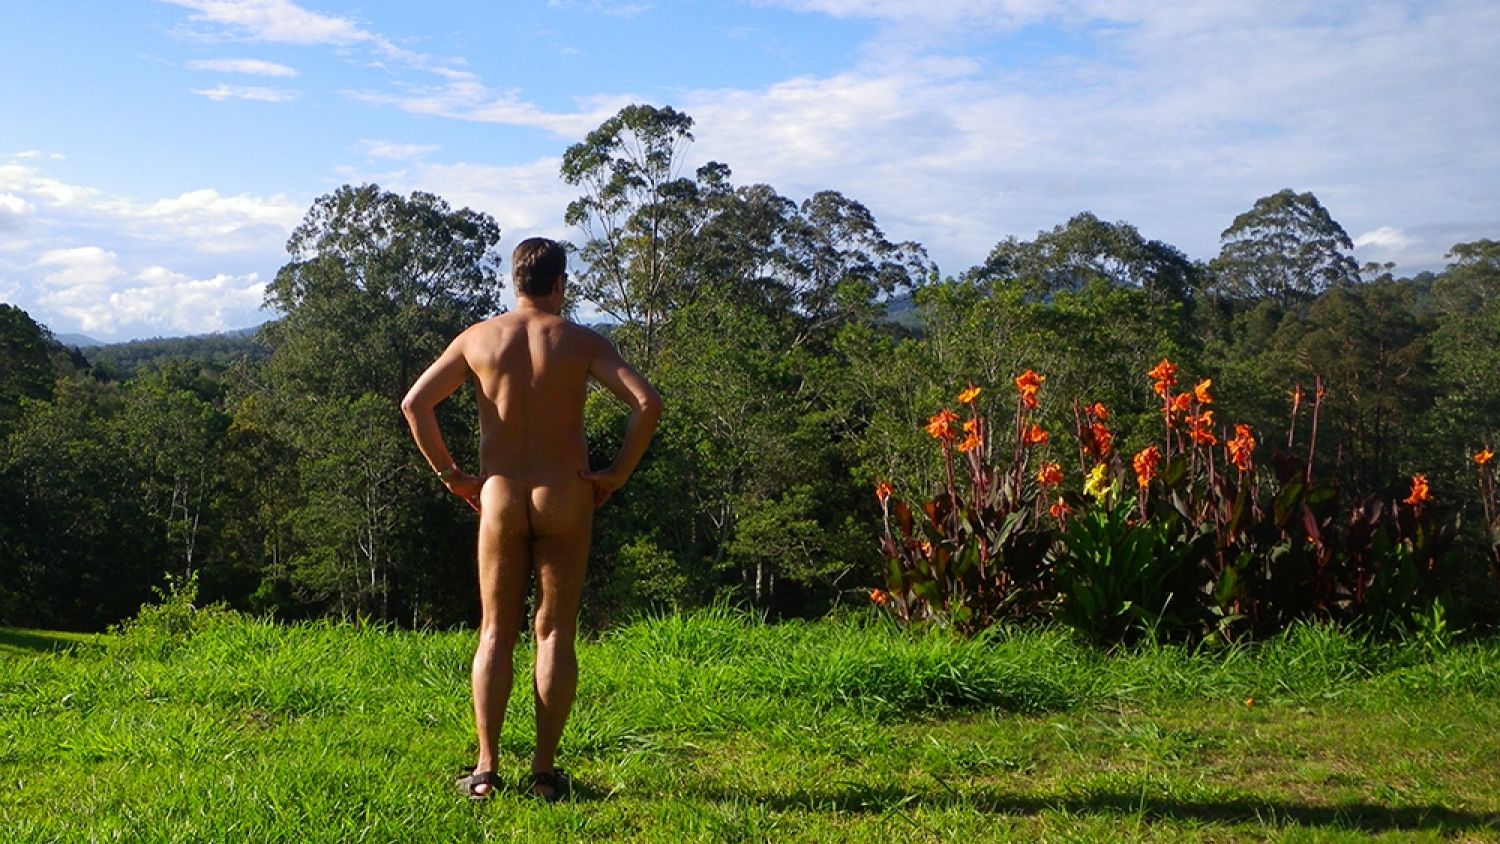 Australian naturist stories. 